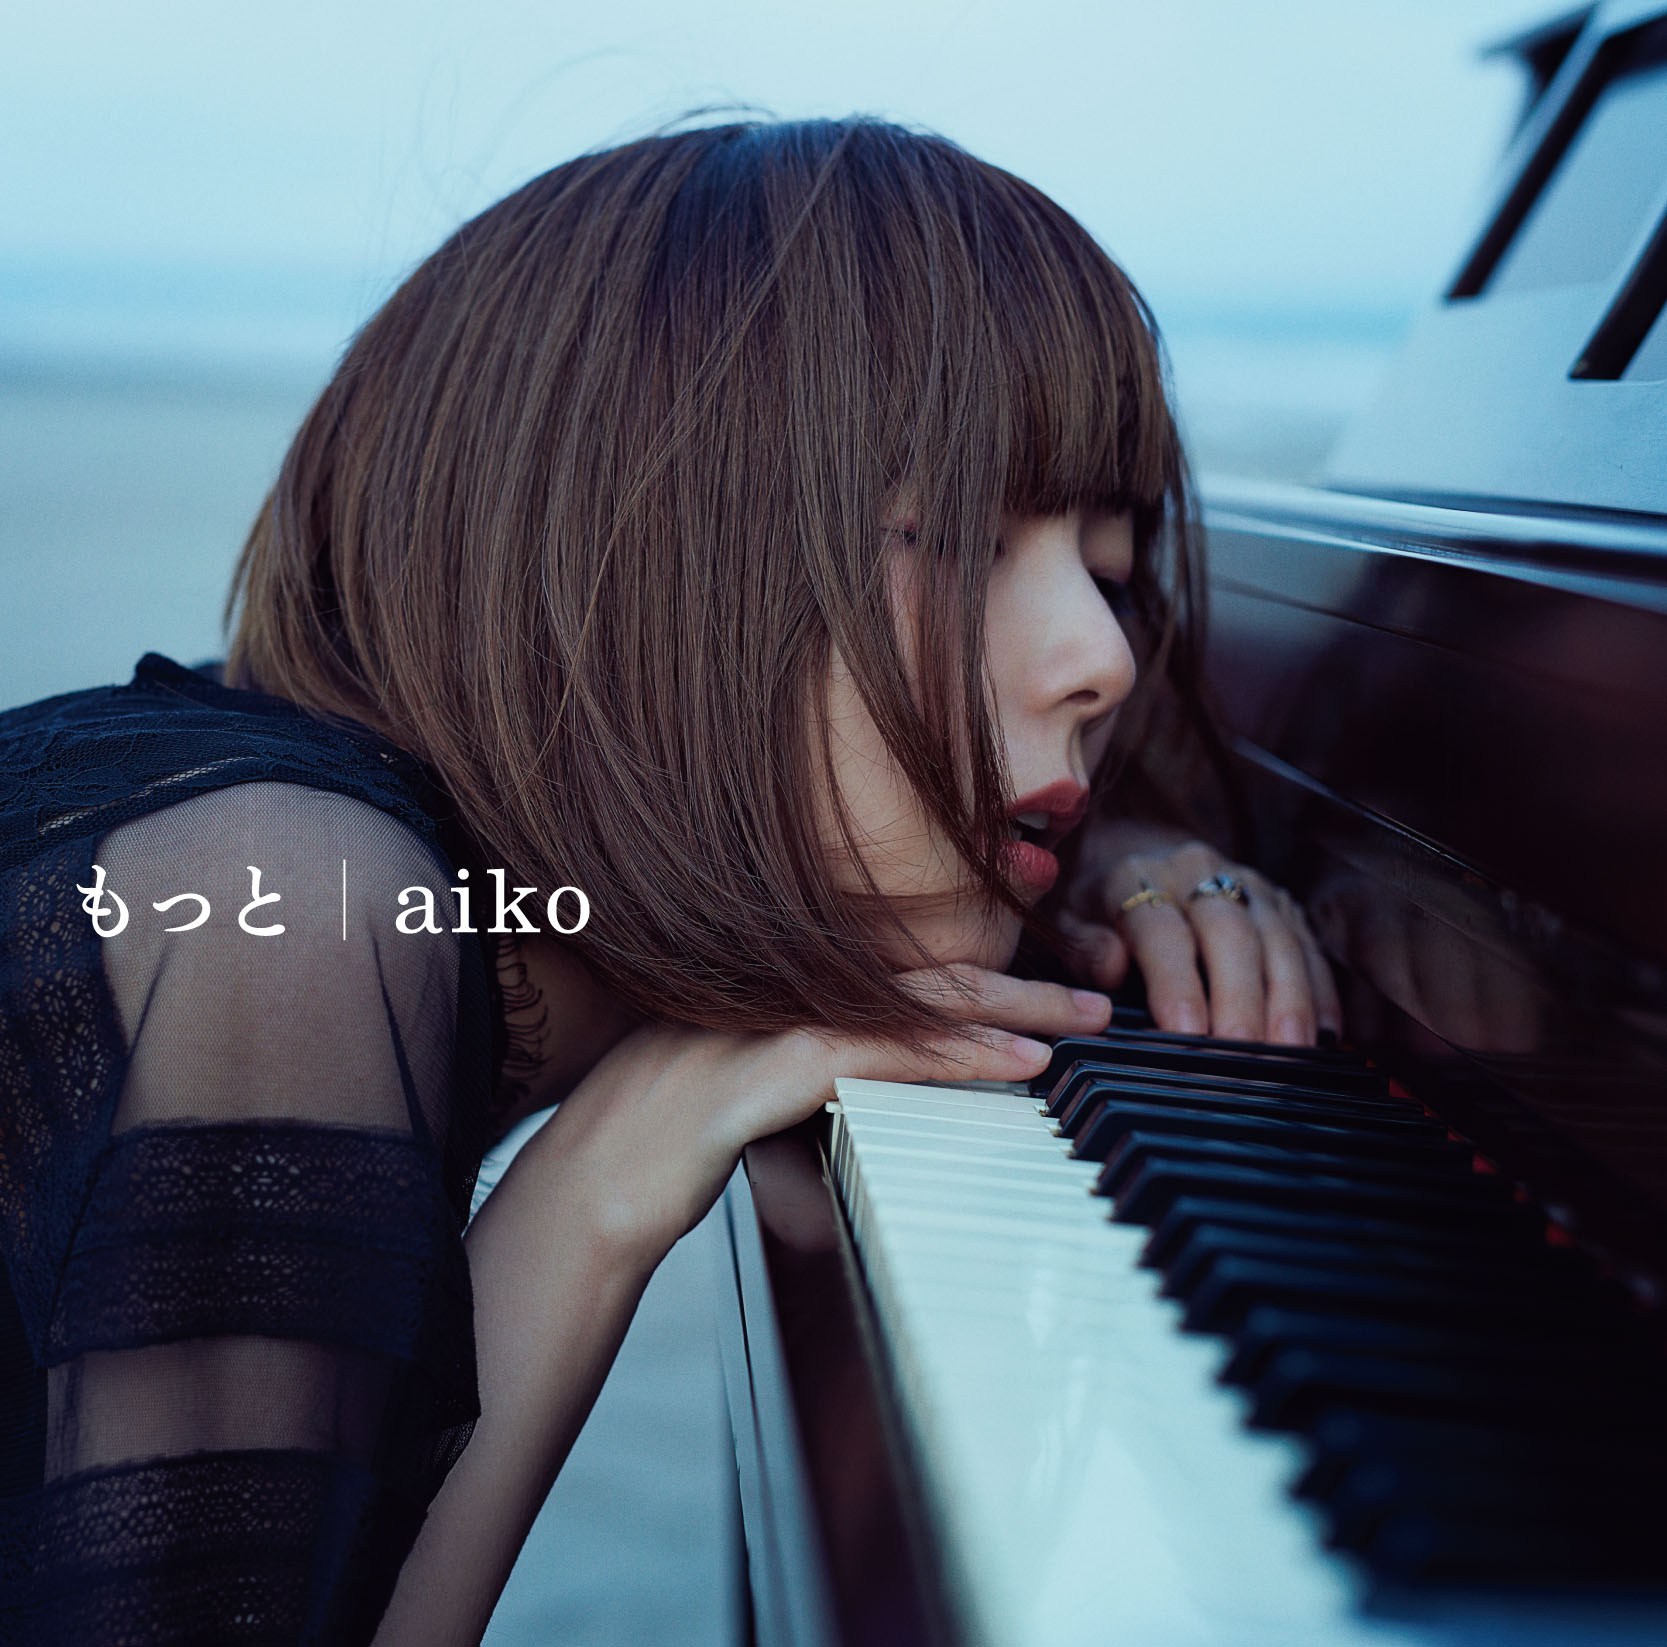 aiko (あいこ) 35thシングル『もっと』(2016年3月9日発売) 初回限定盤 高画質ジャケット画像